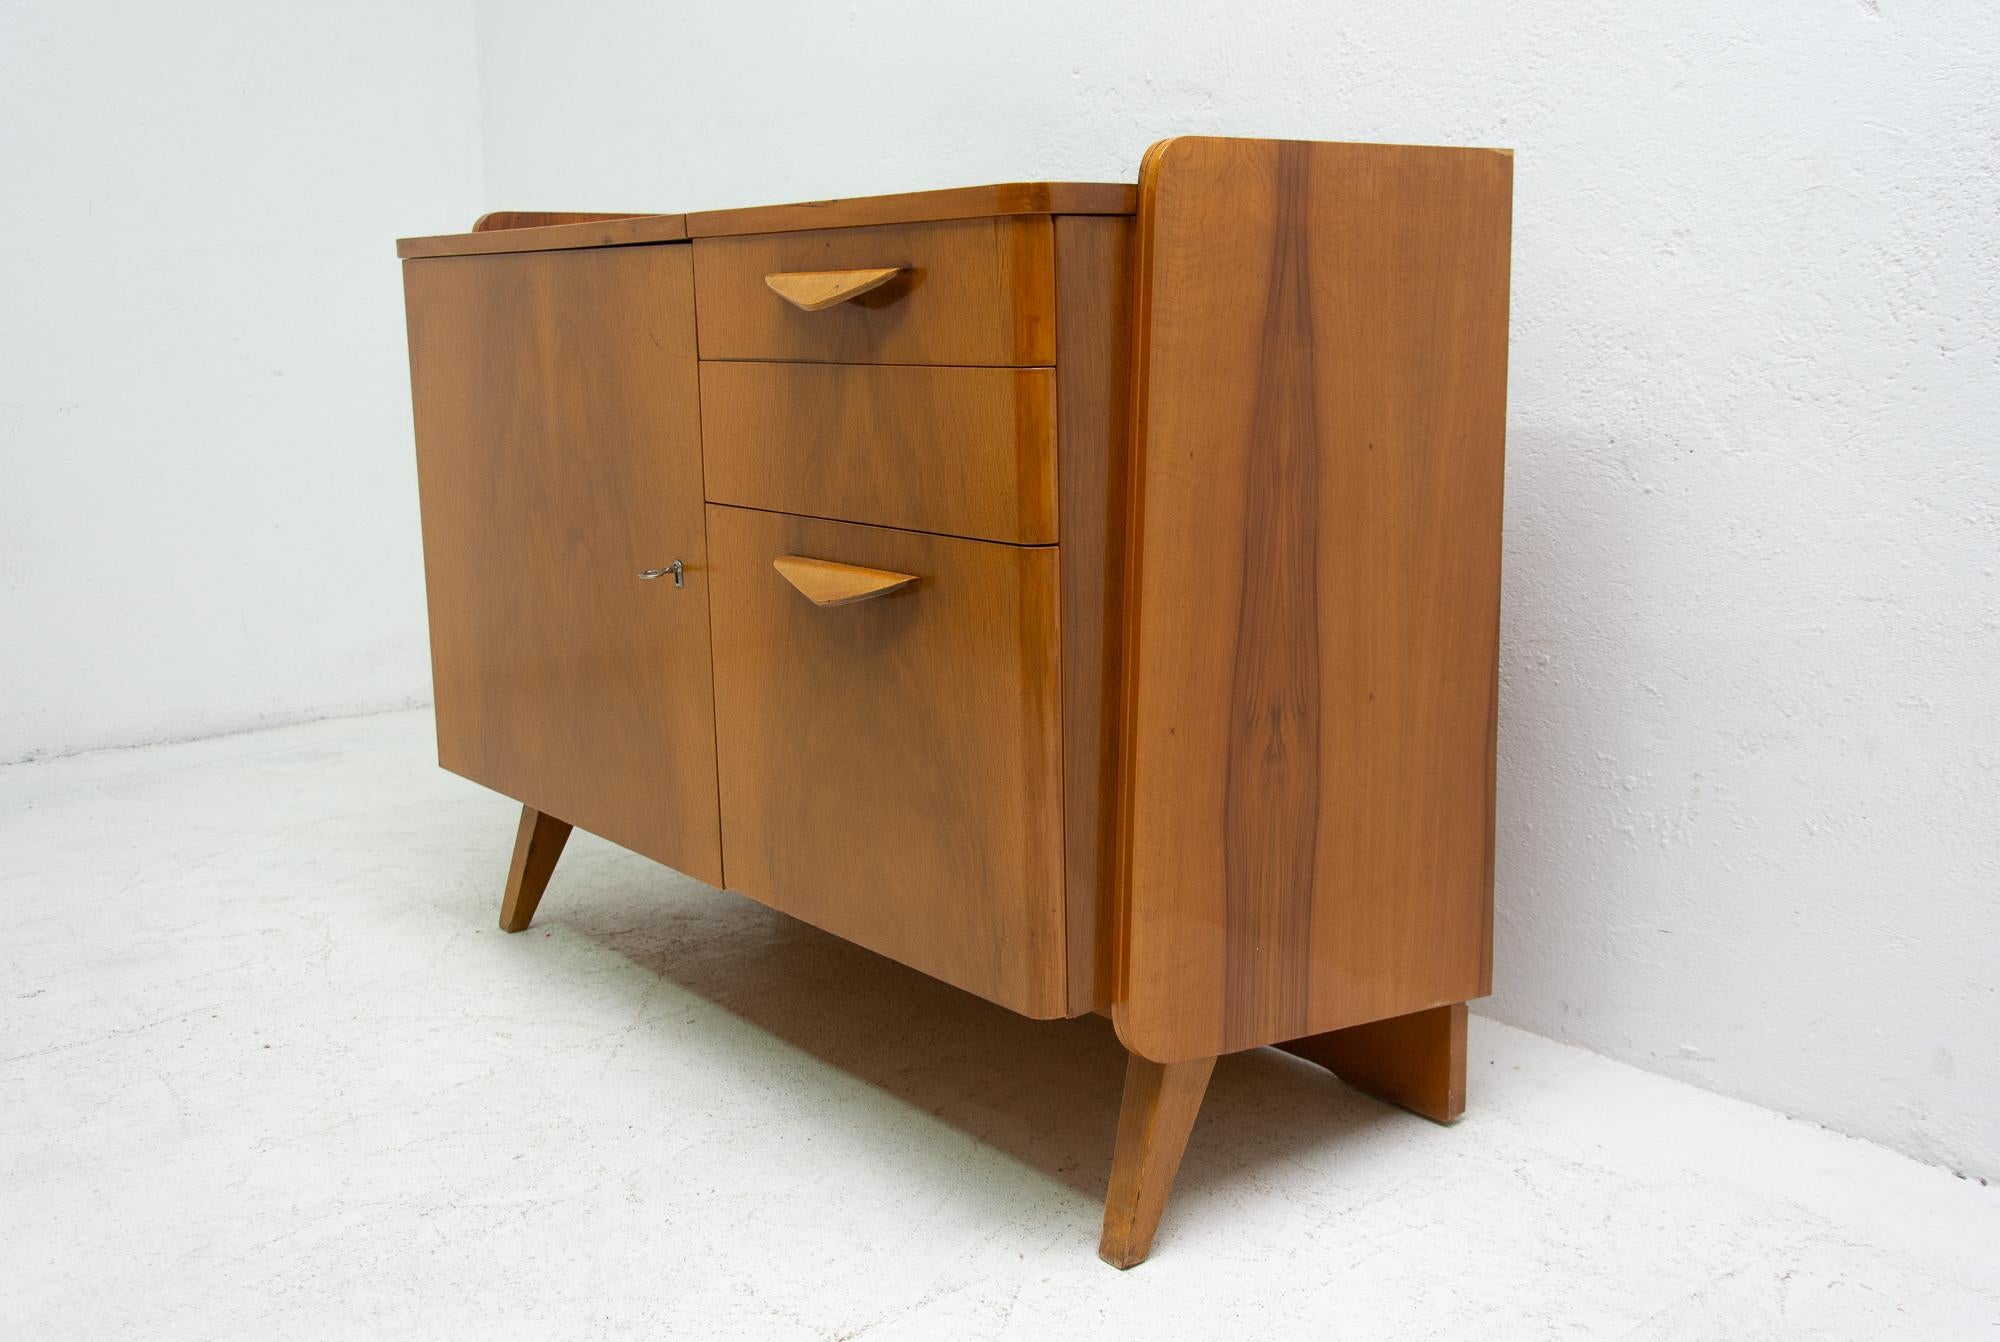 Scandinavian Modern Midcentury Vintage Small Cabinet by František Jirák, 1960s, Czechoslovakia